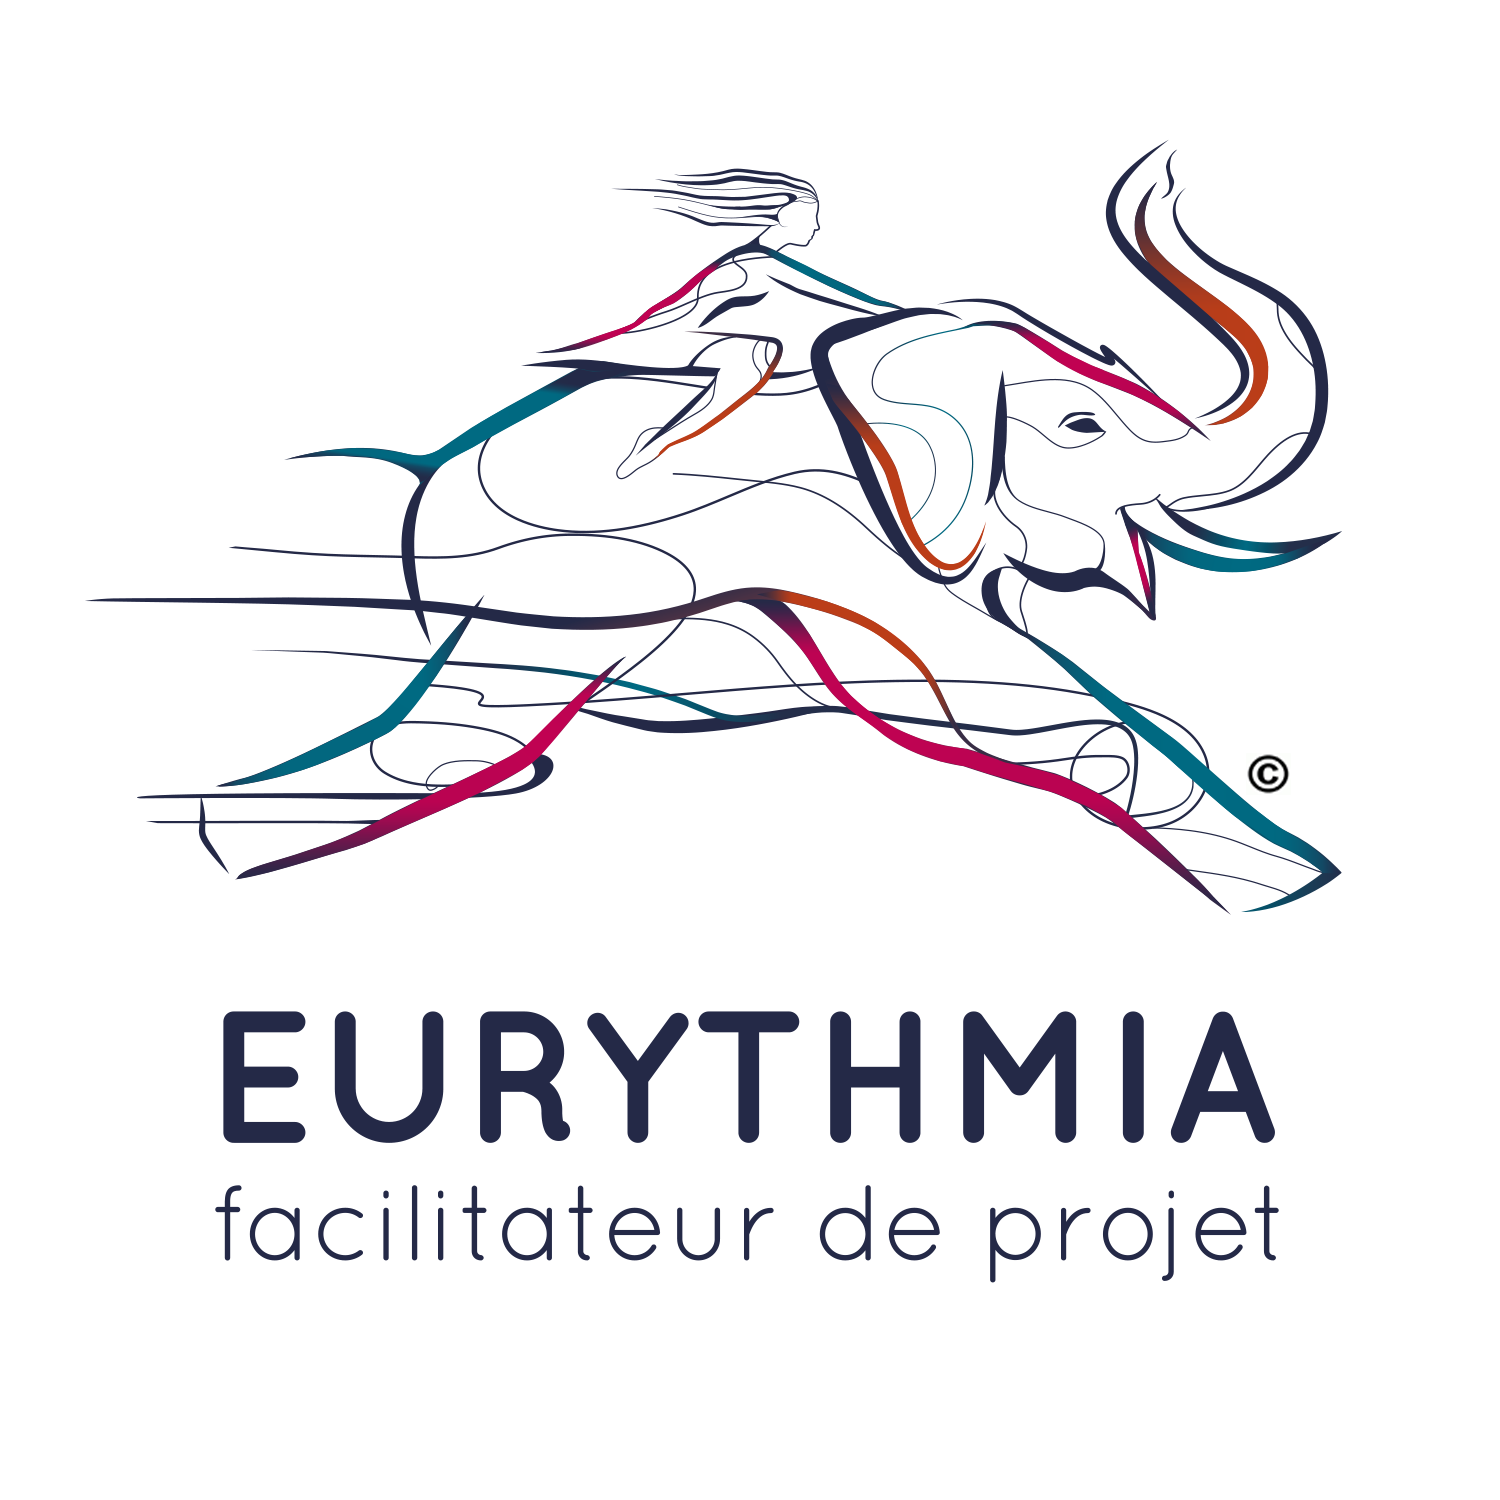 Institution Eurythmia